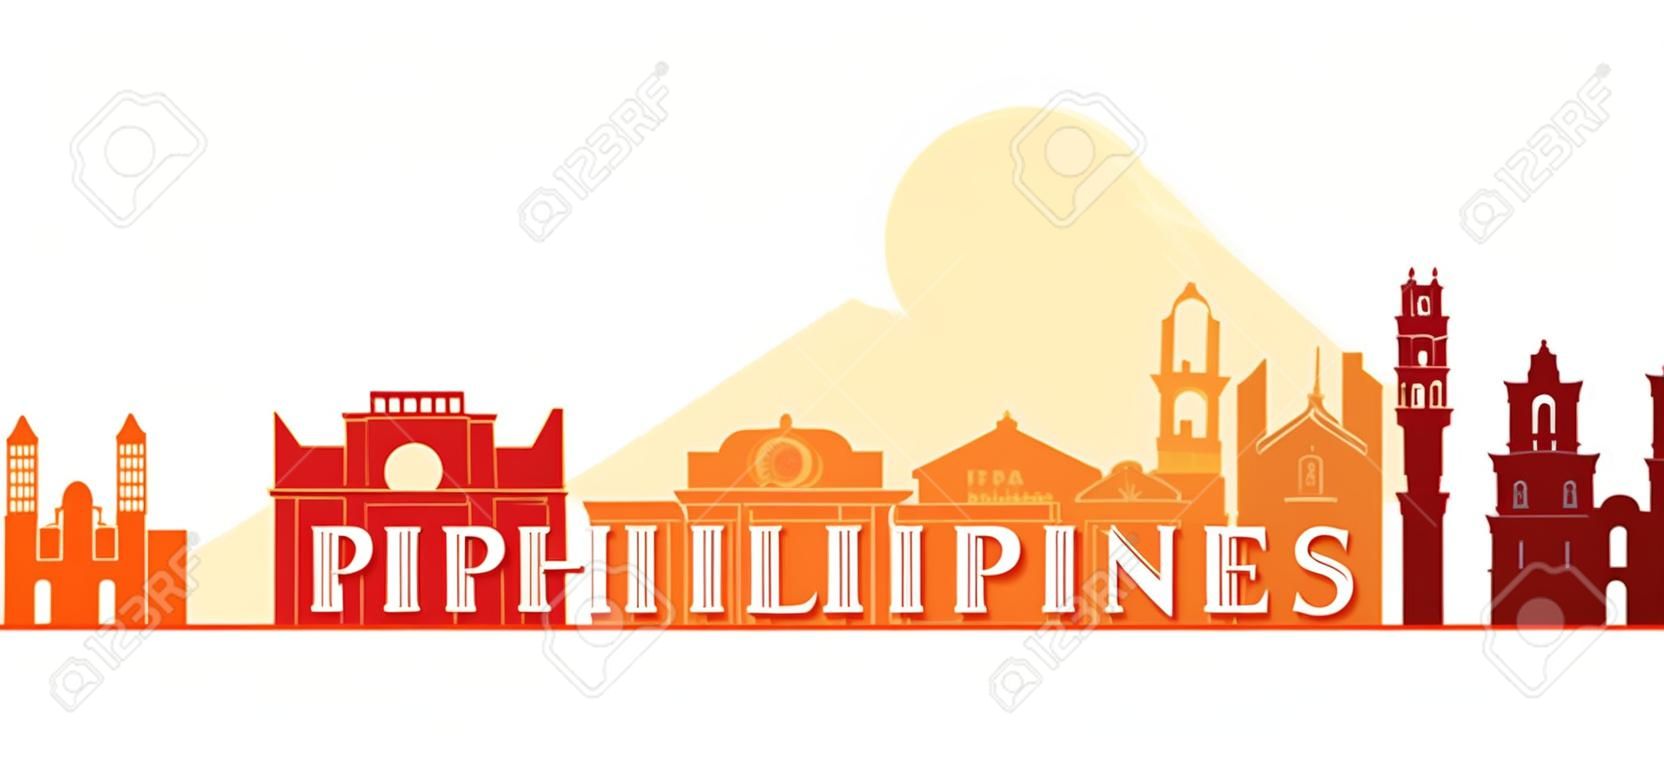 필리핀 건축물 랜드 마크 스카이 라인, 모양, 도시, 여행 및 관광 명소